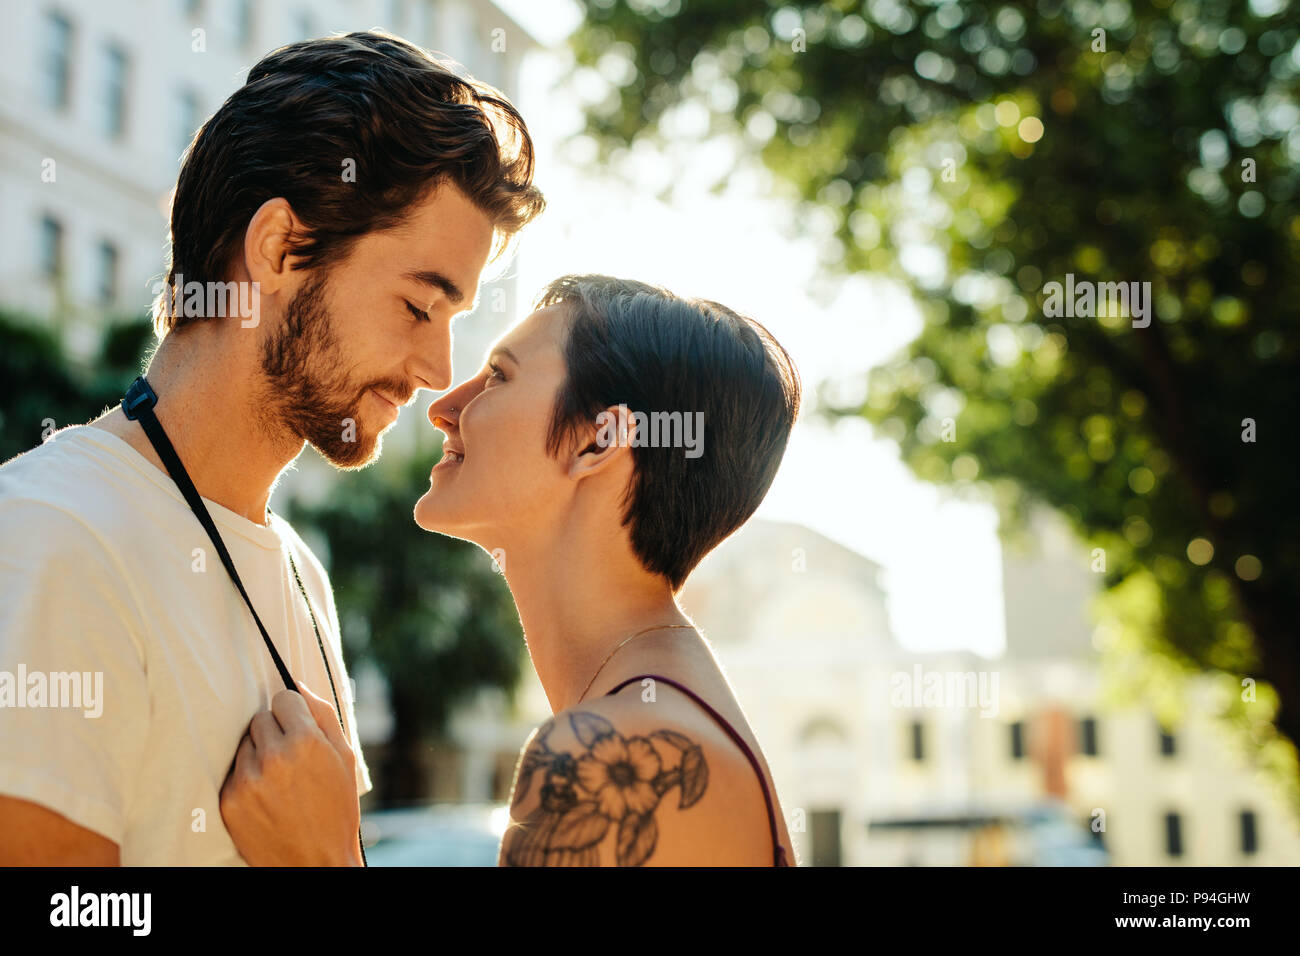 Donna in piedi vicino ad un uomo che sta per baciare permanente sulla strada. Turista giovane in una felice e umore romantico mentre ad esplorare la città. Foto Stock